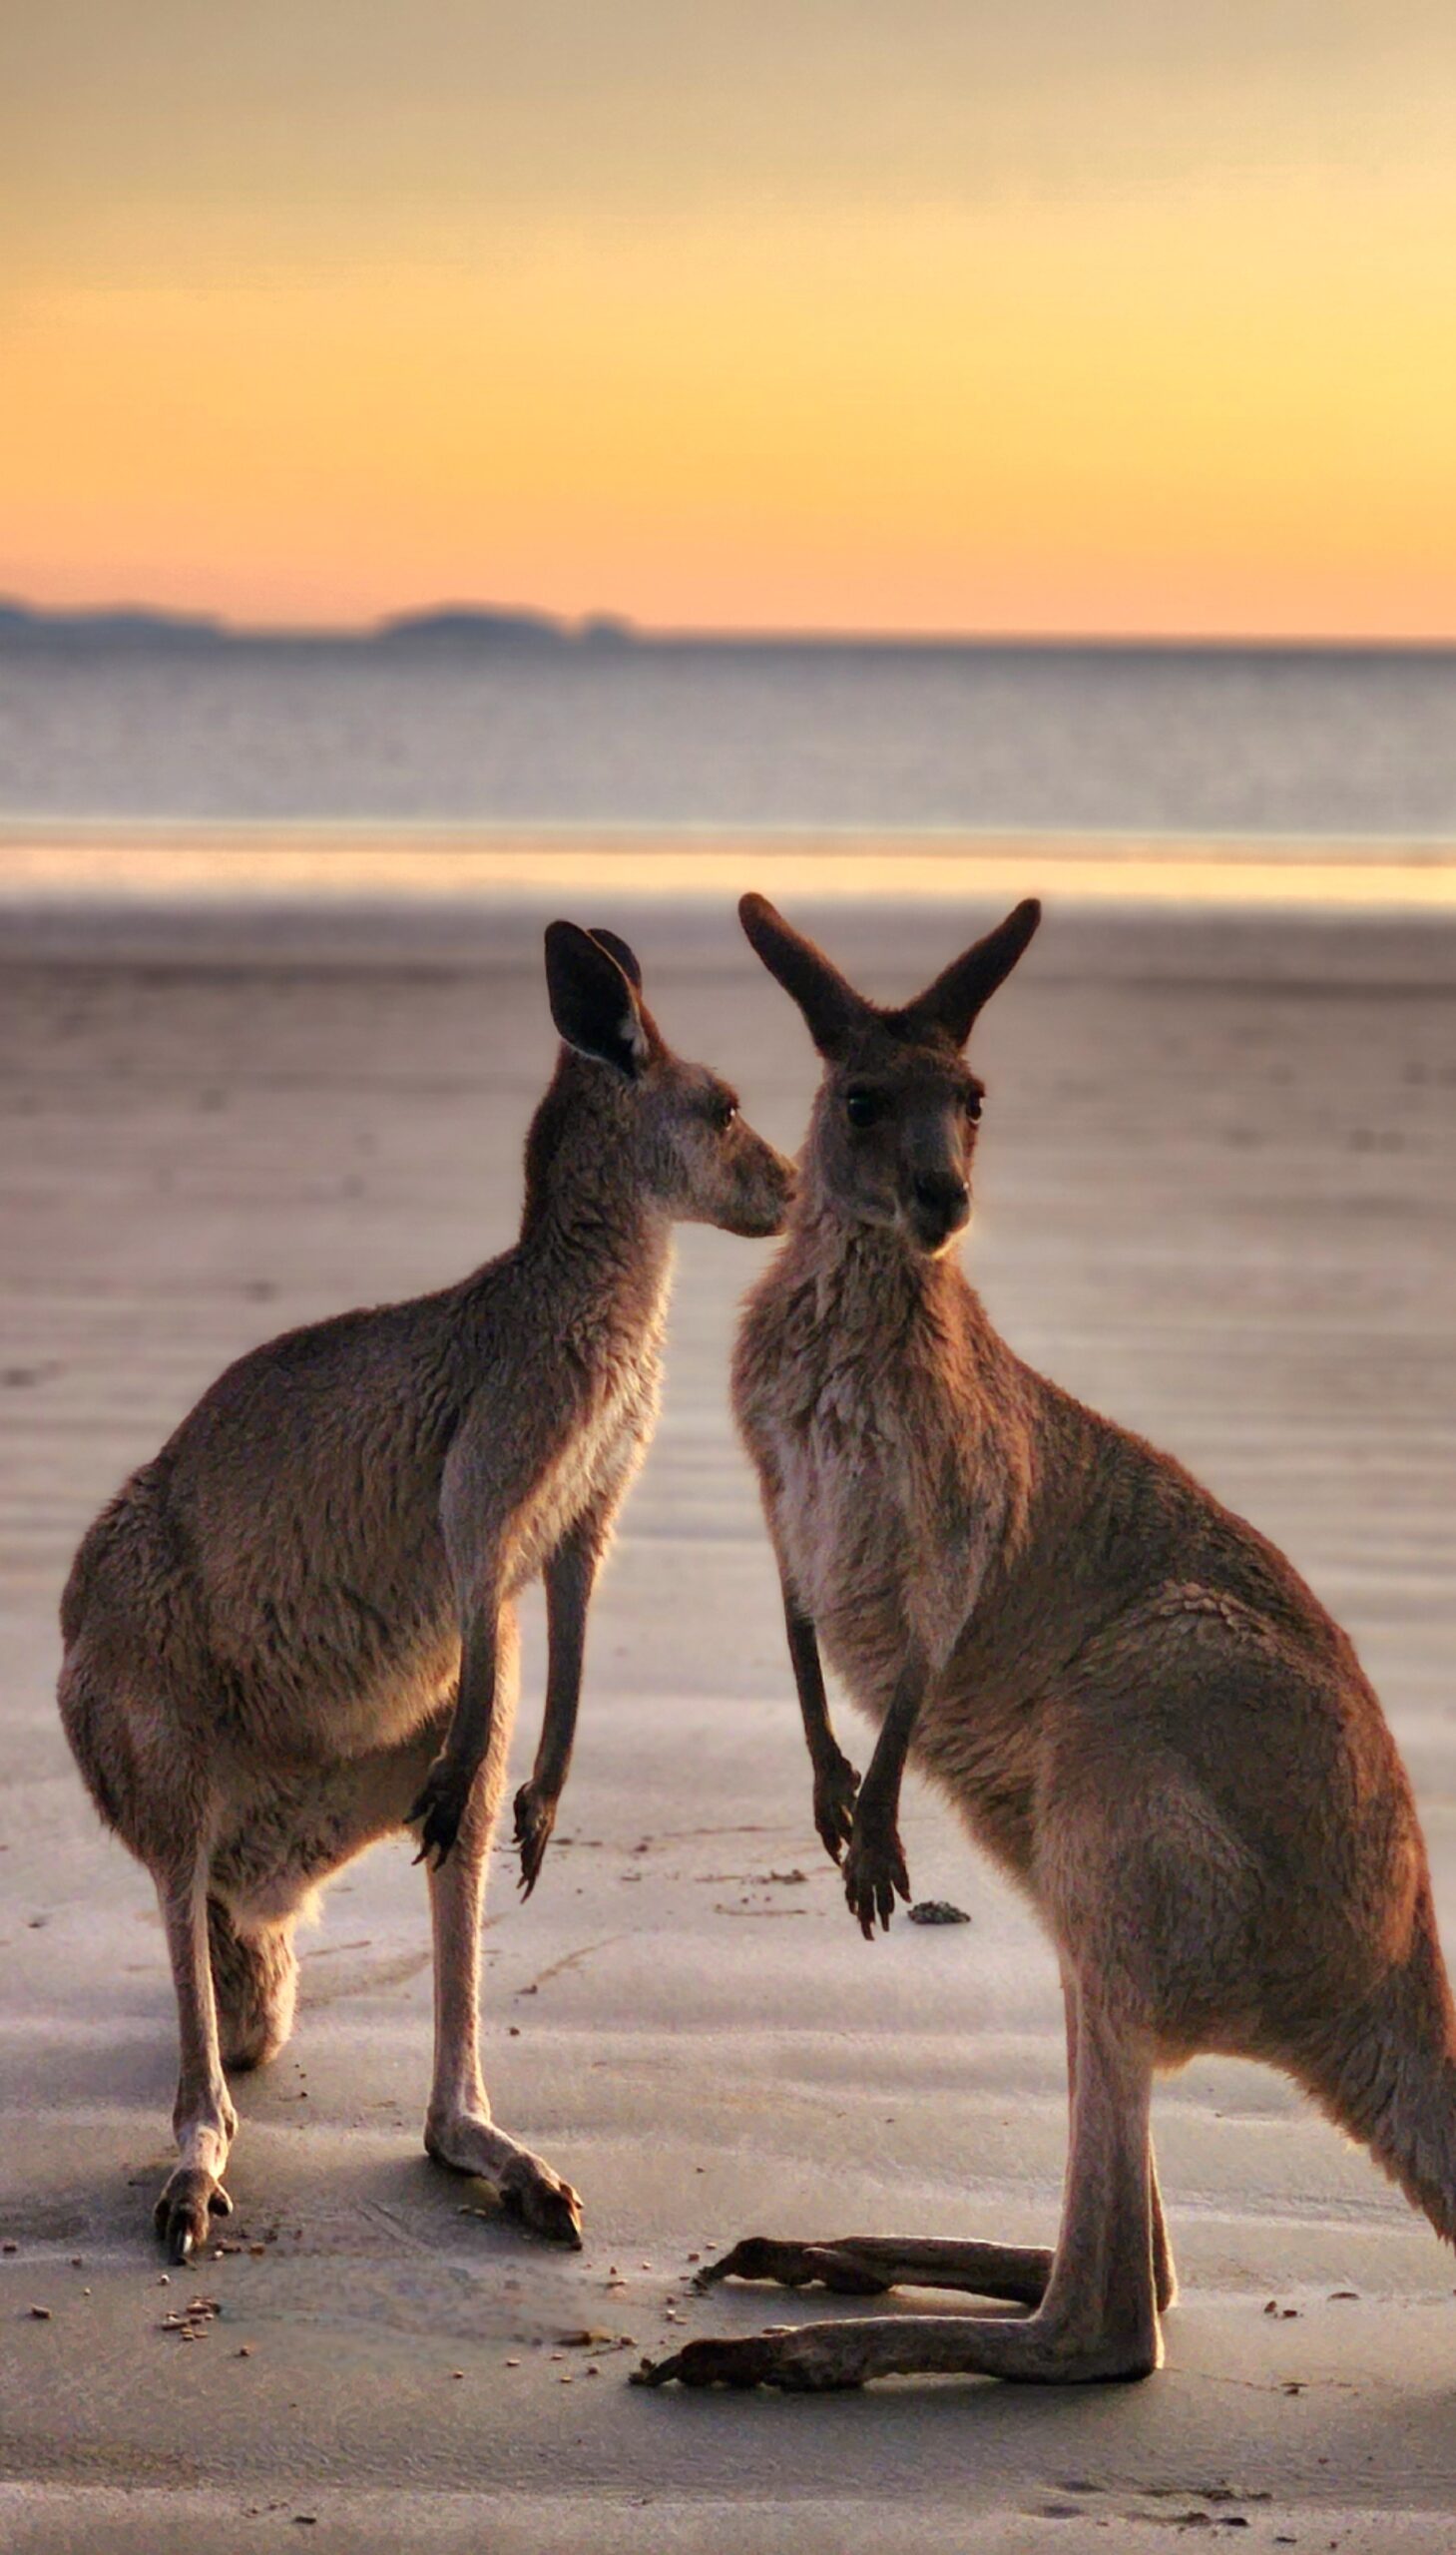 Sunrise with kangaroos-departs Airlie Beach